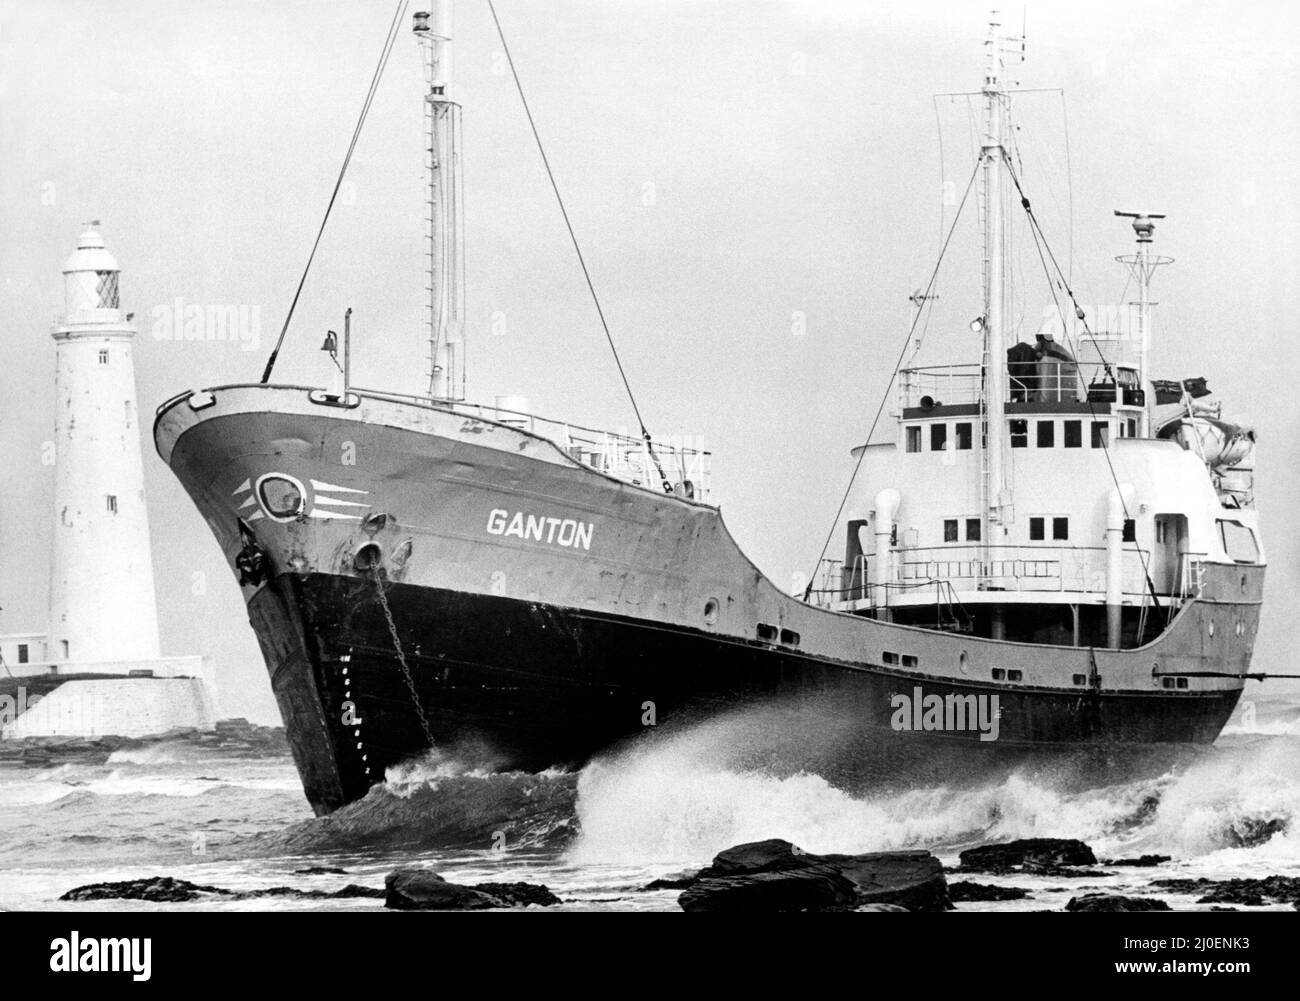 Nordost-Schiffswracks - die angeschlagene 400-tom Achterbahn Ganton lag gestrandet, nachdem sie in der Nähe von St Mary's Island, Whitley Bay, auf Felsen gelandet war. Das Tynemouth-Rettungsboot wurde gerufen, um die vier Besatzungsmitglieder in Sicherheit zu bringen. Die vier wurden später als Ian Cowie, von Blyth, Howard Russell, von Berwick und den Scotmen Stuart Barrie und Wayne Smith benannt. Doch als sich die Retter auf die knifflige Rettungsoperation vorbereiteten, setzten sich Skipper John Tullough und Ingenieur Bill Sannon an Currys Point, Whitley Bay, wo die Ganton an Land ging, hin. Die Schiffseigner, die in Edinburgh ansässige Lindsay Line, waren sich der Tatsache des Schiffes verbunden Stockfoto